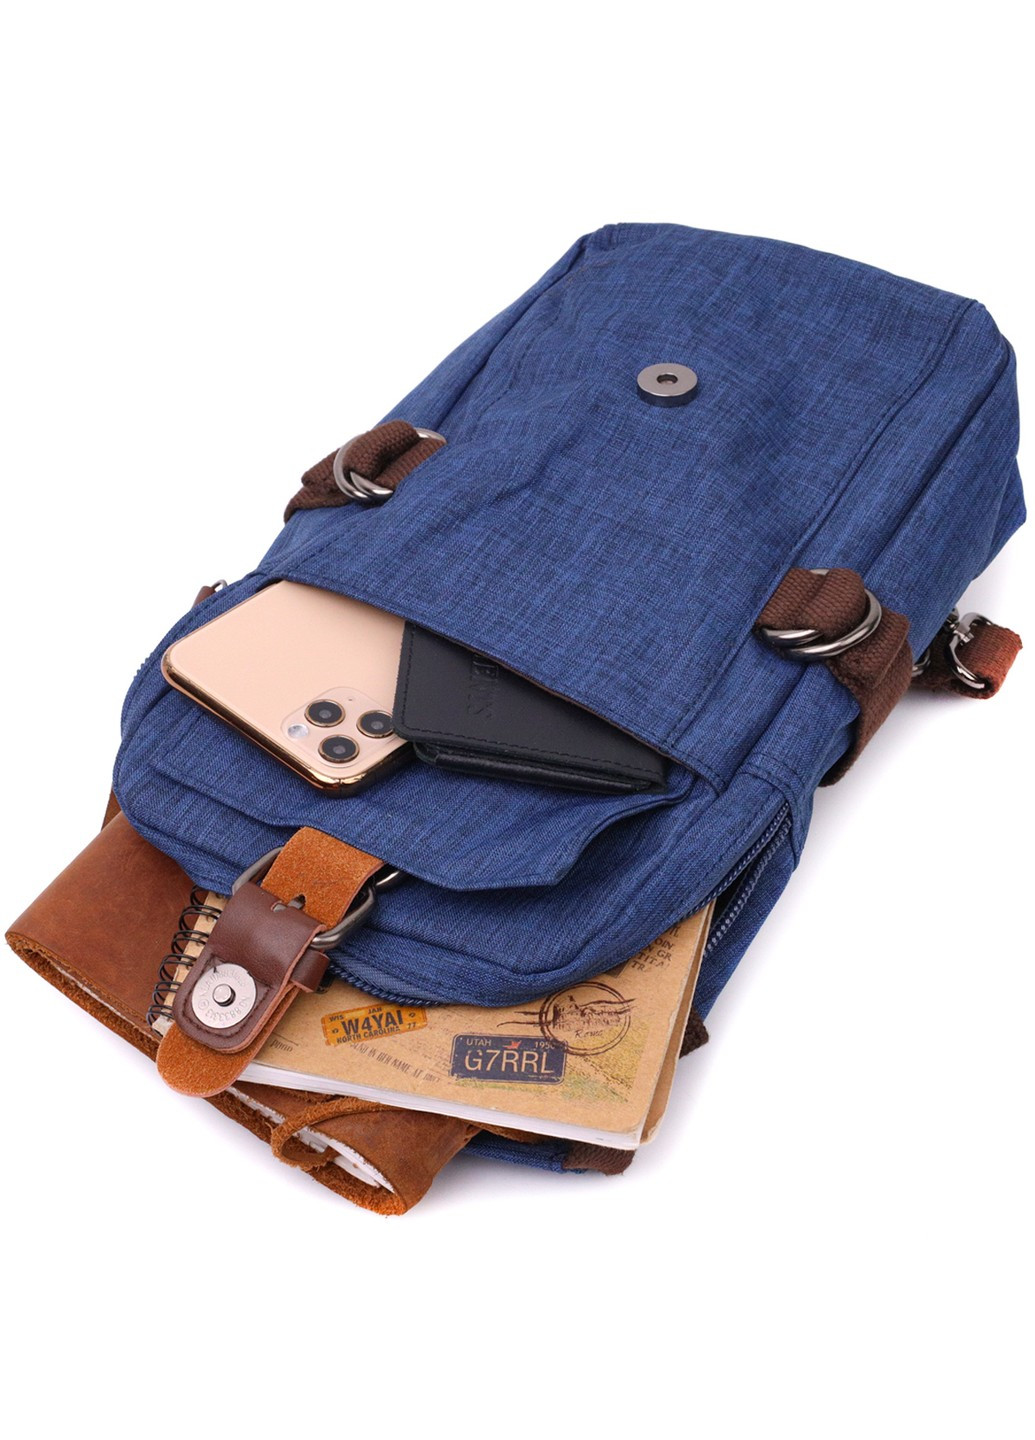 Интересная плечевая сумка для мужчин из плотного текстиля 22190 Синий Vintage (267932190)